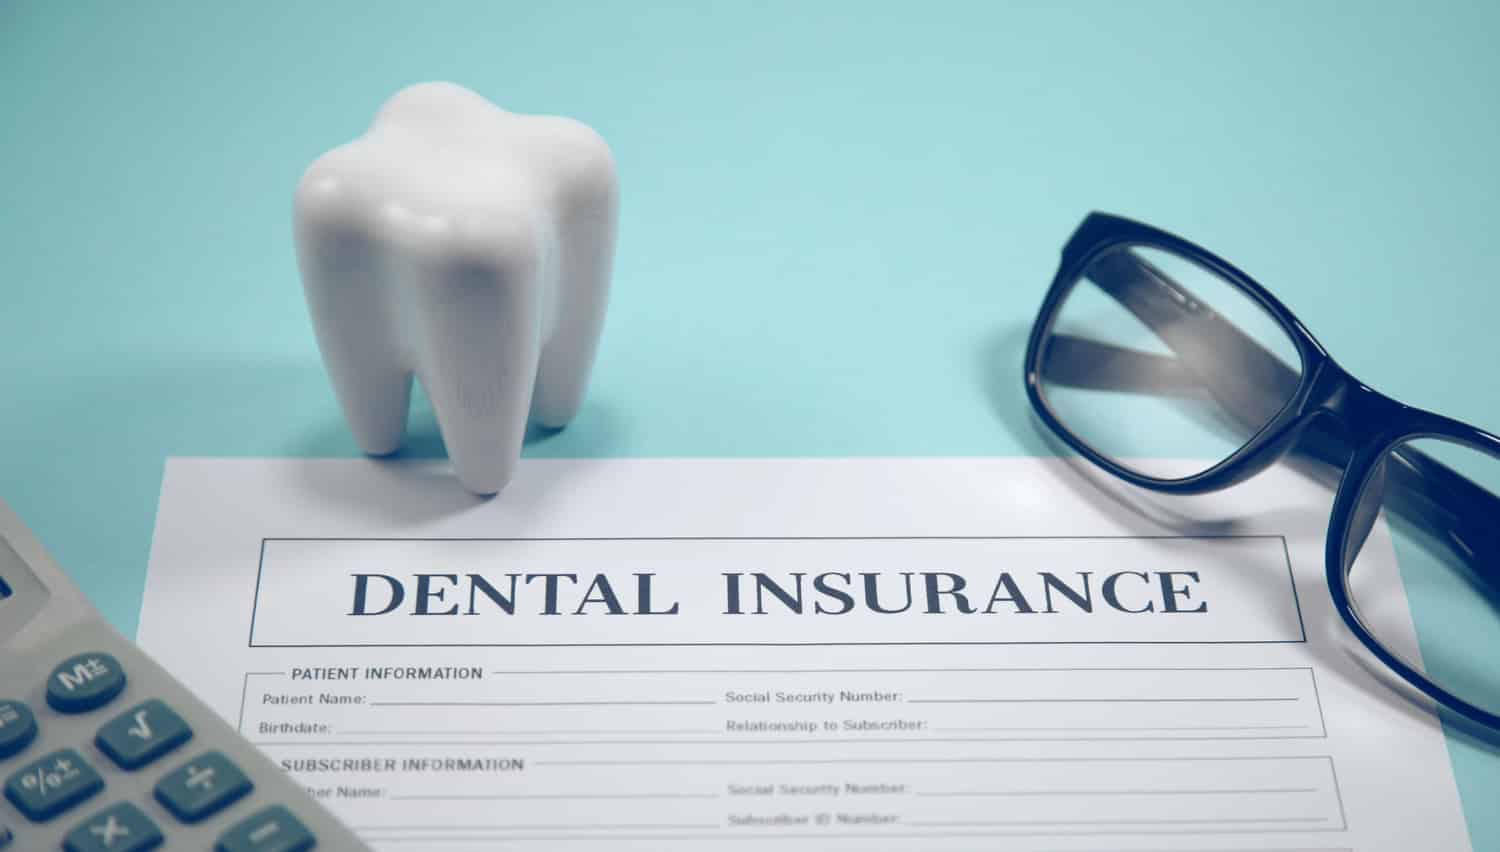 Dental insurance plans